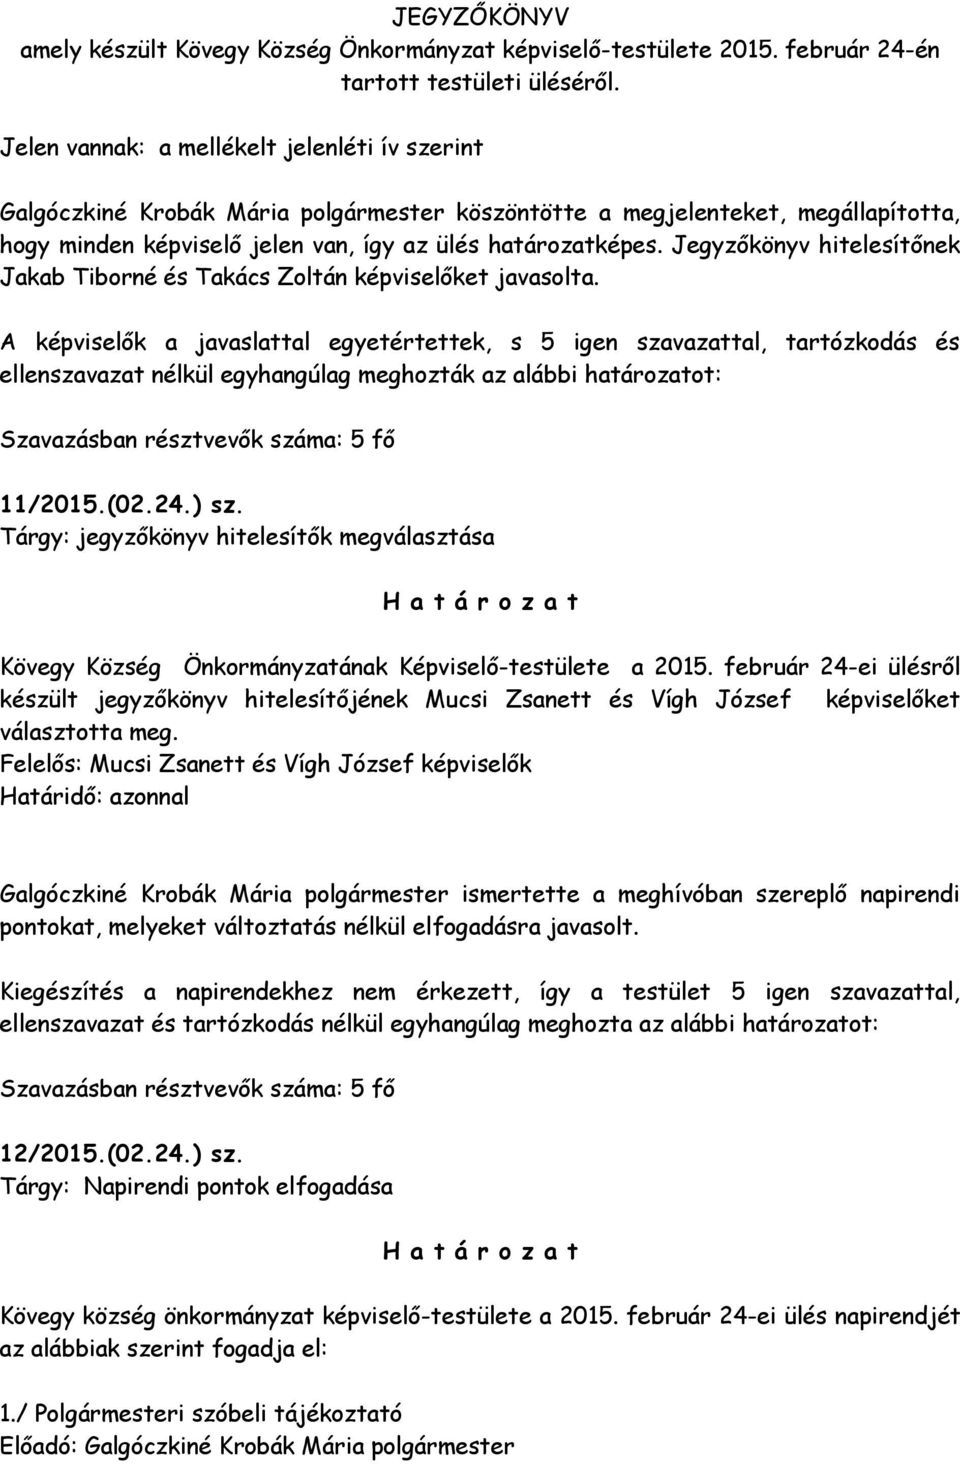 Jegyzőkönyv hitelesítőnek Jakab Tiborné és Takács Zoltán képviselőket javasolta.